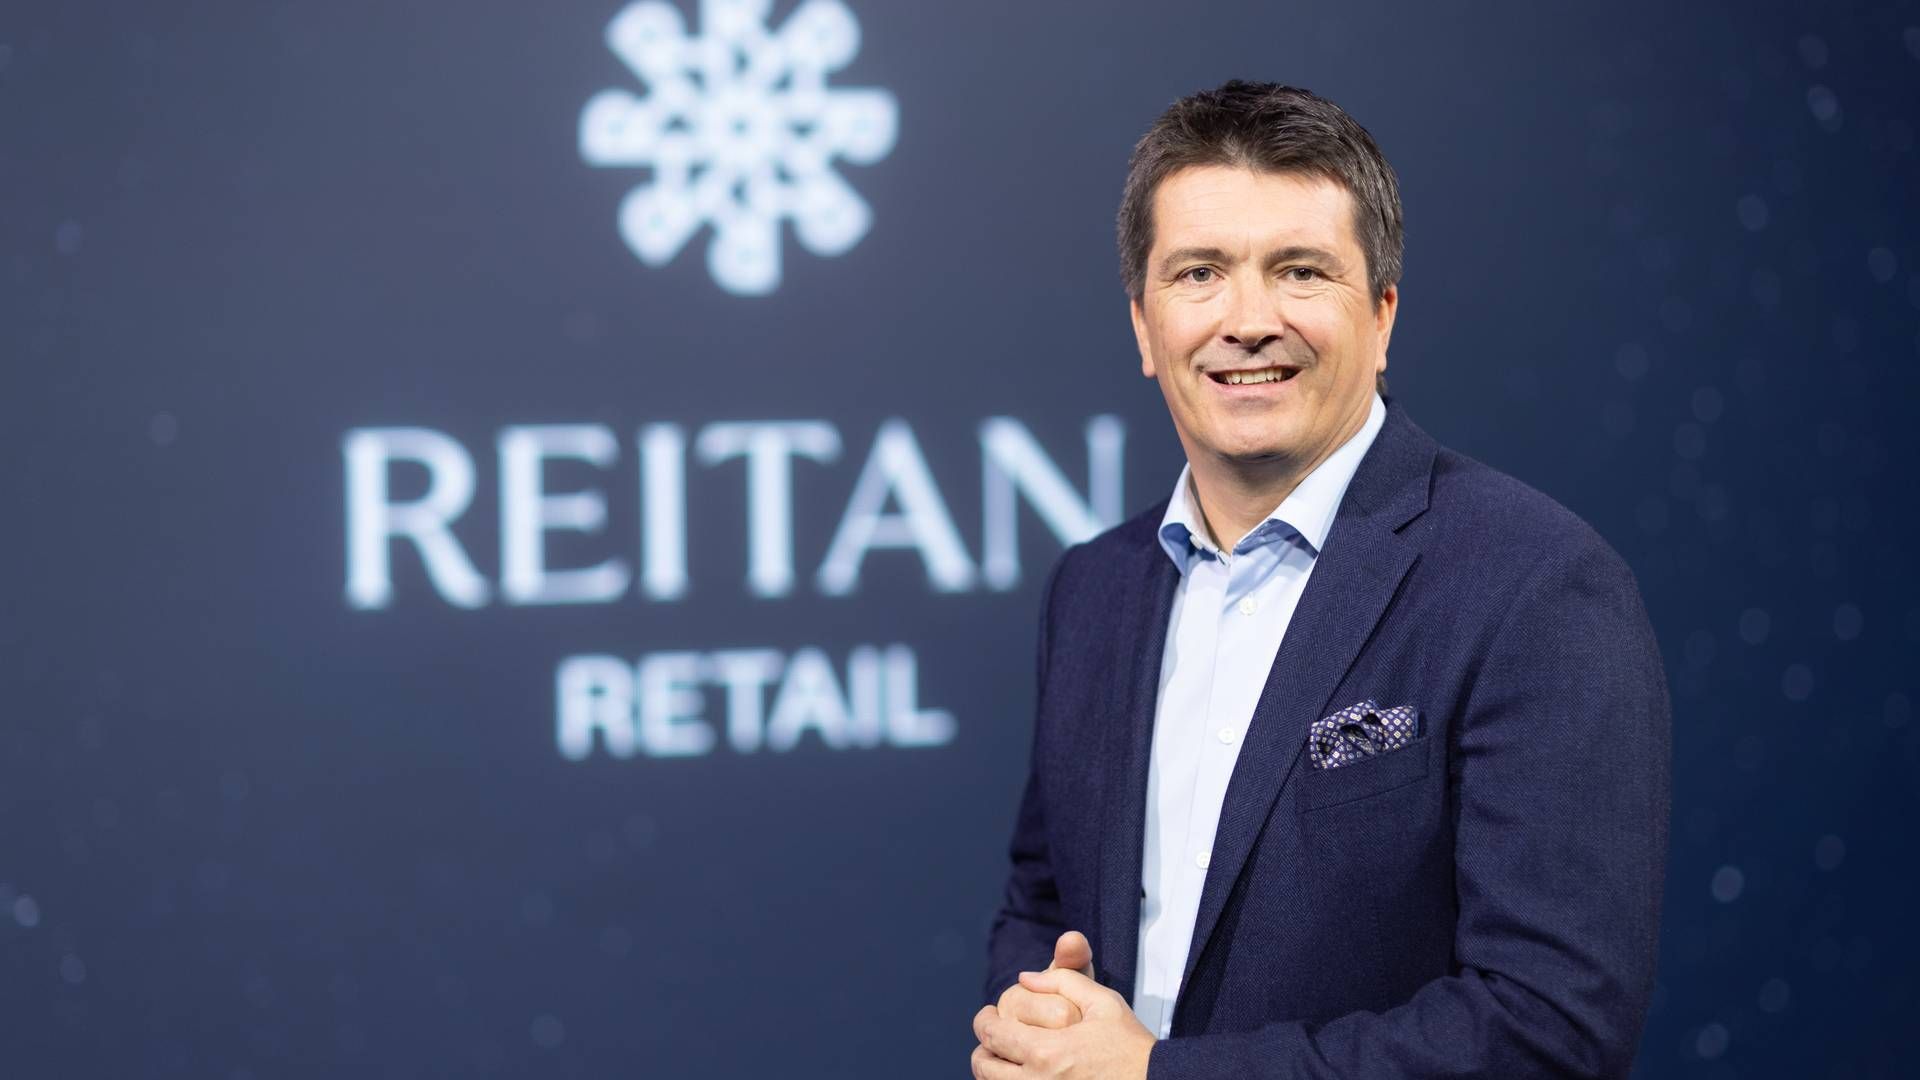 Ole Robert Reitan er topchef i Reaitan Retail og anden generation af familien bag den norske Rema 1000-kæde. | Foto: Øyvind Breivik